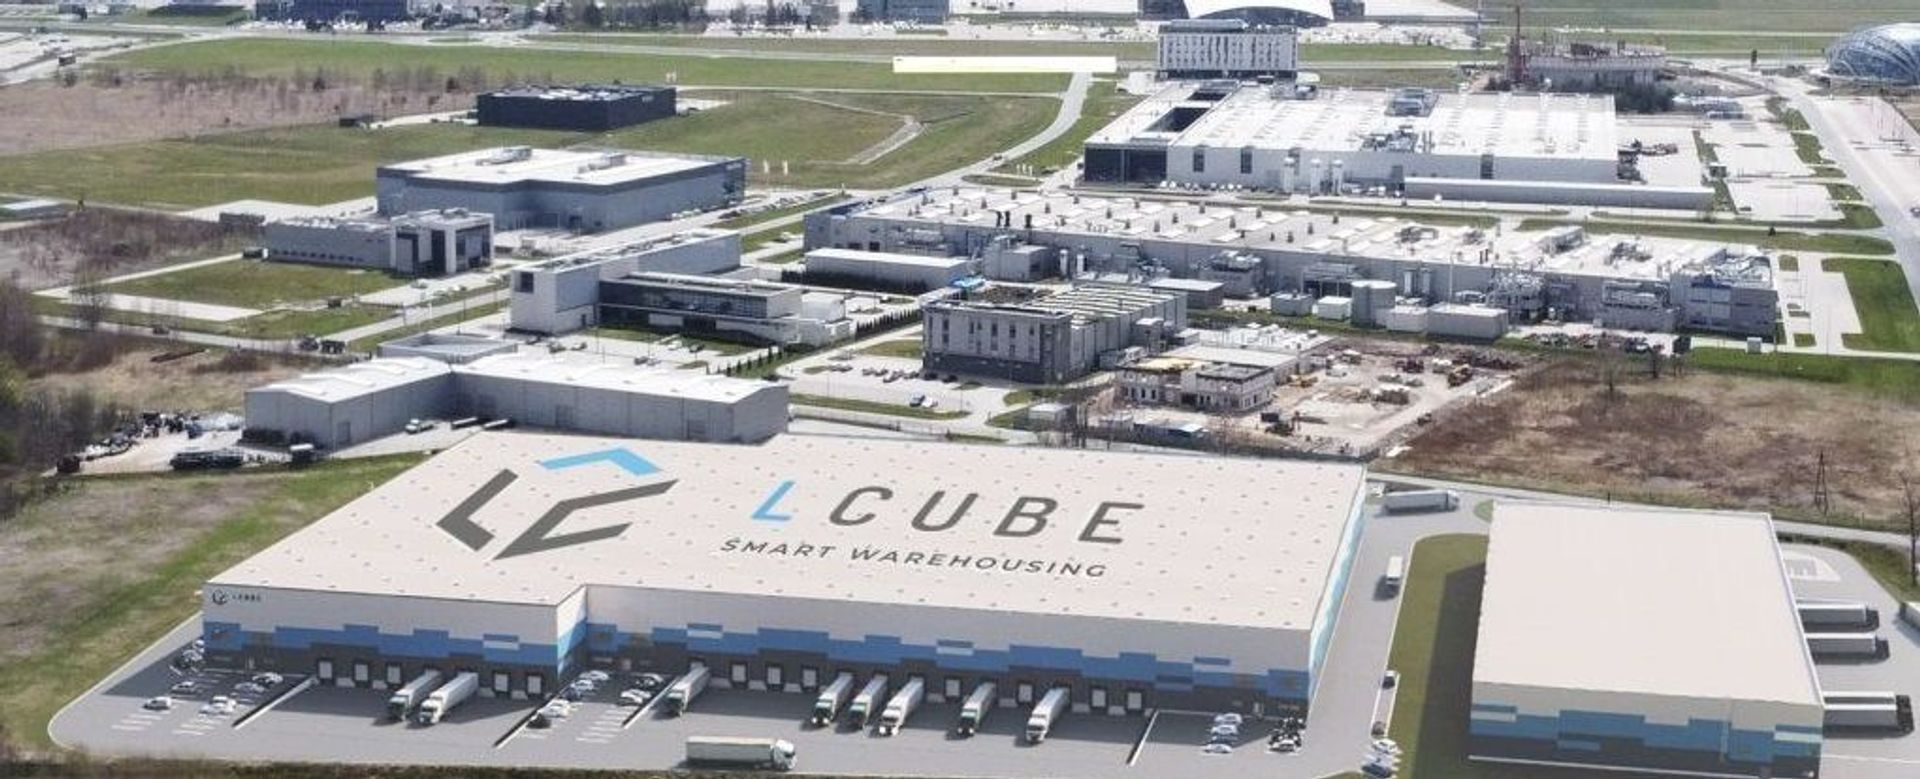 Budowa kompleksu magazynowego LCube Rzeszów Airport zakończona